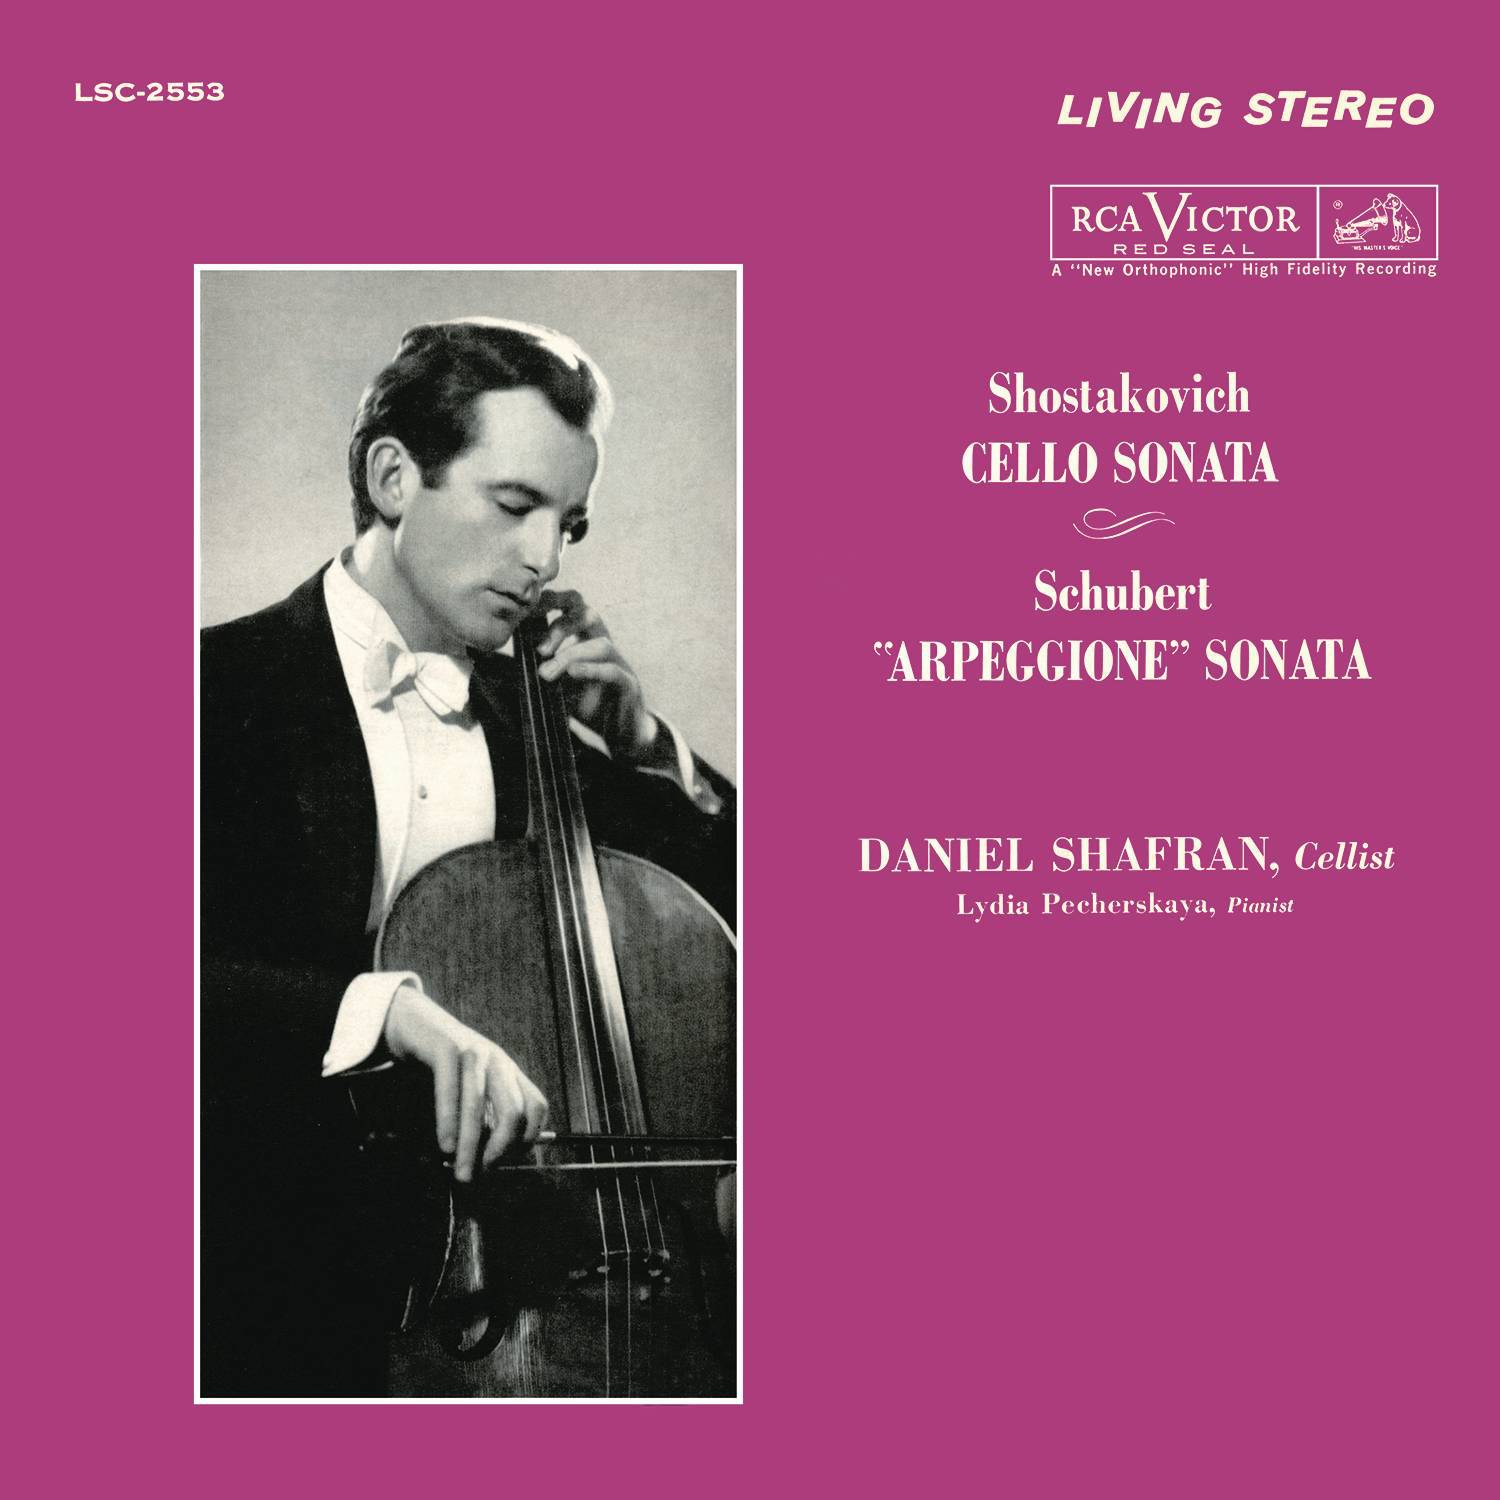 Shostakovich: Cello Sonata in D Minor, Op. 40 - Schubert: Arpeggione Sonata in A Minor, D. 821